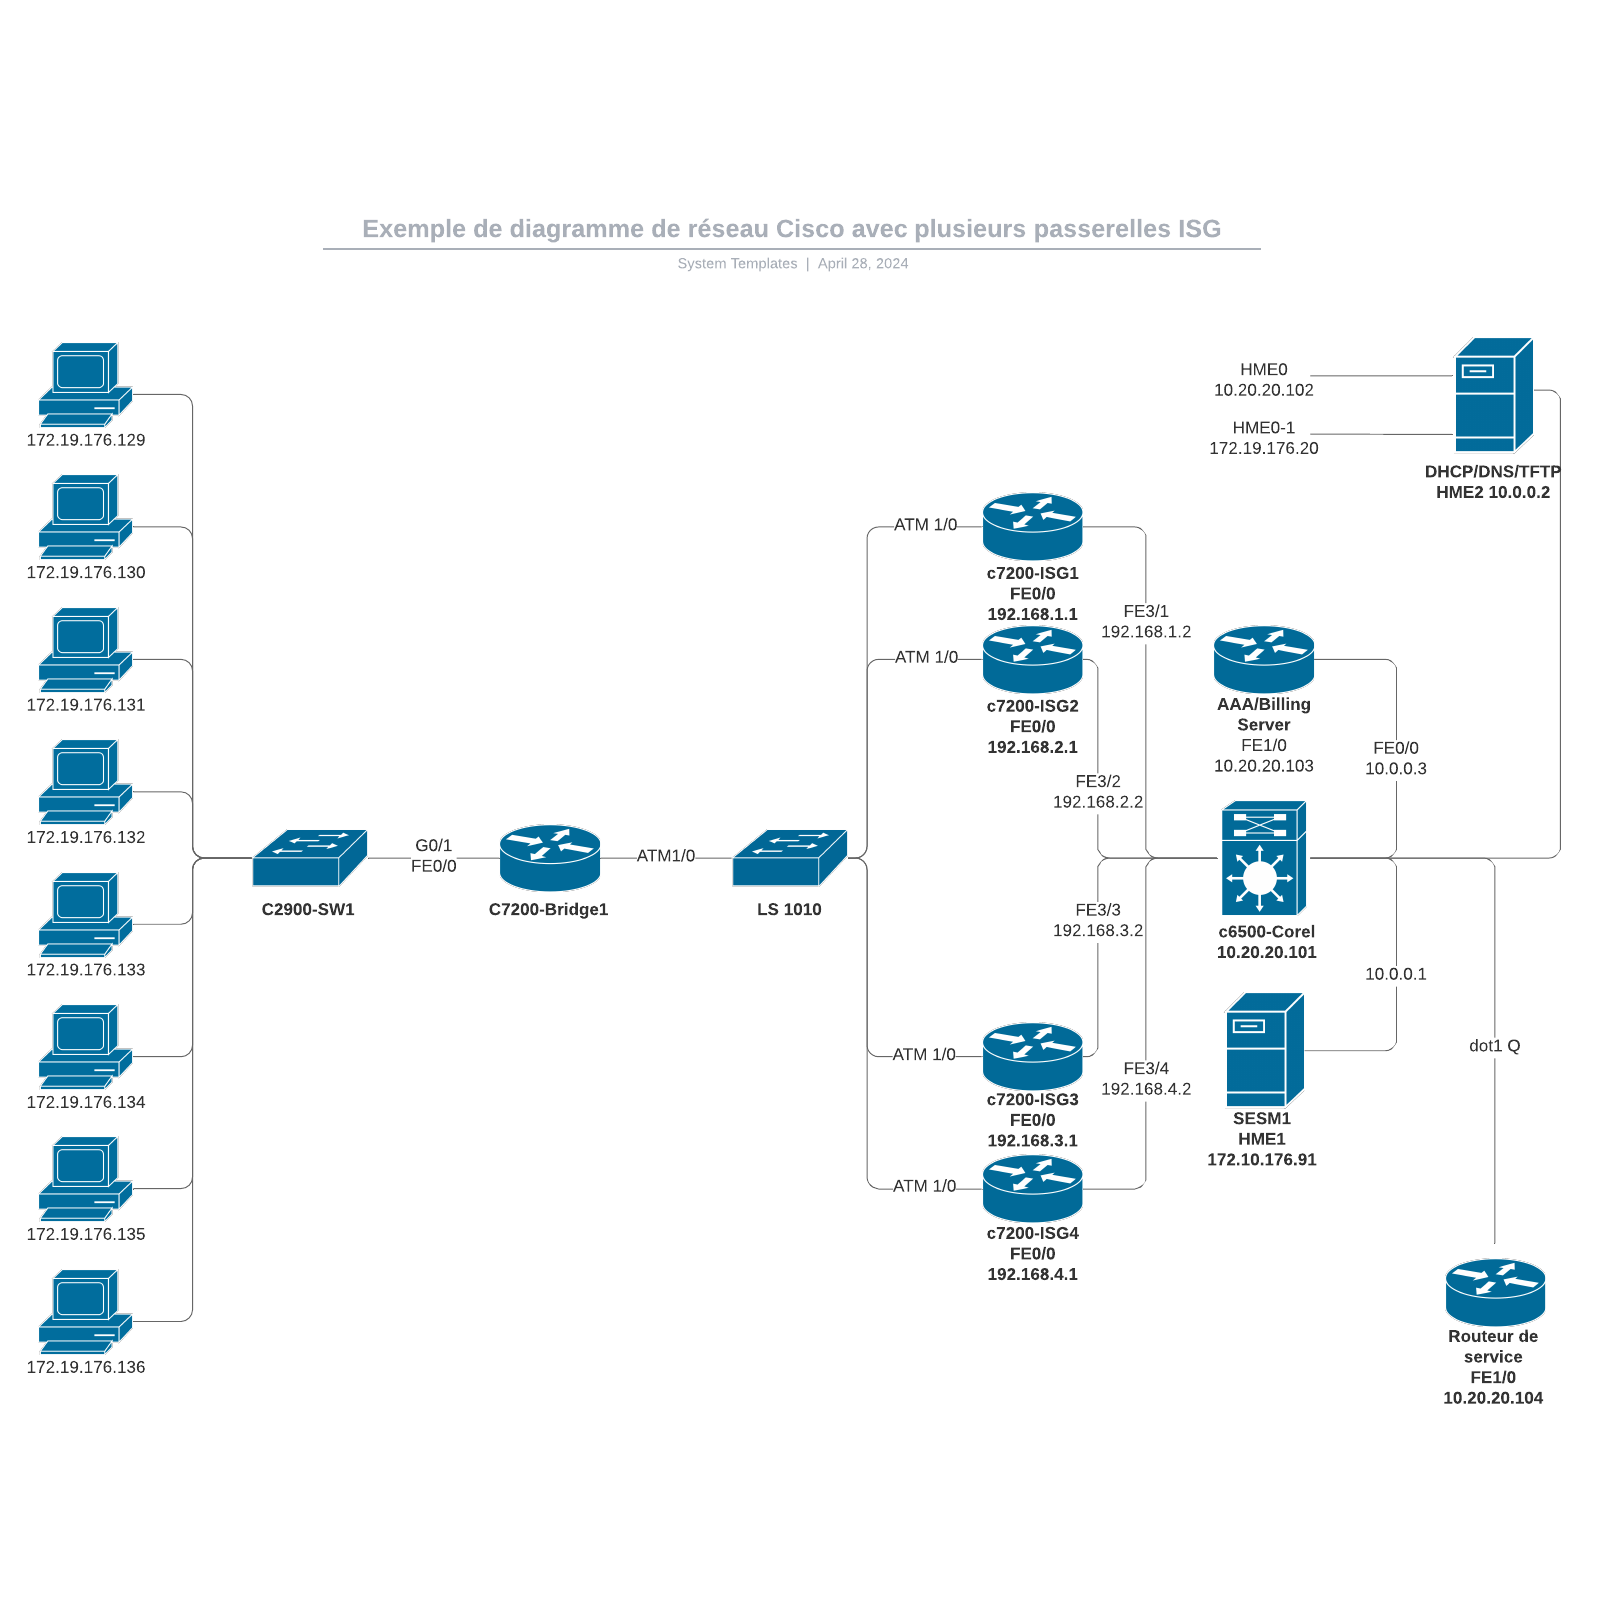 exemple de diagramme de réseau Cisco avec plusieurs passerelles ISG